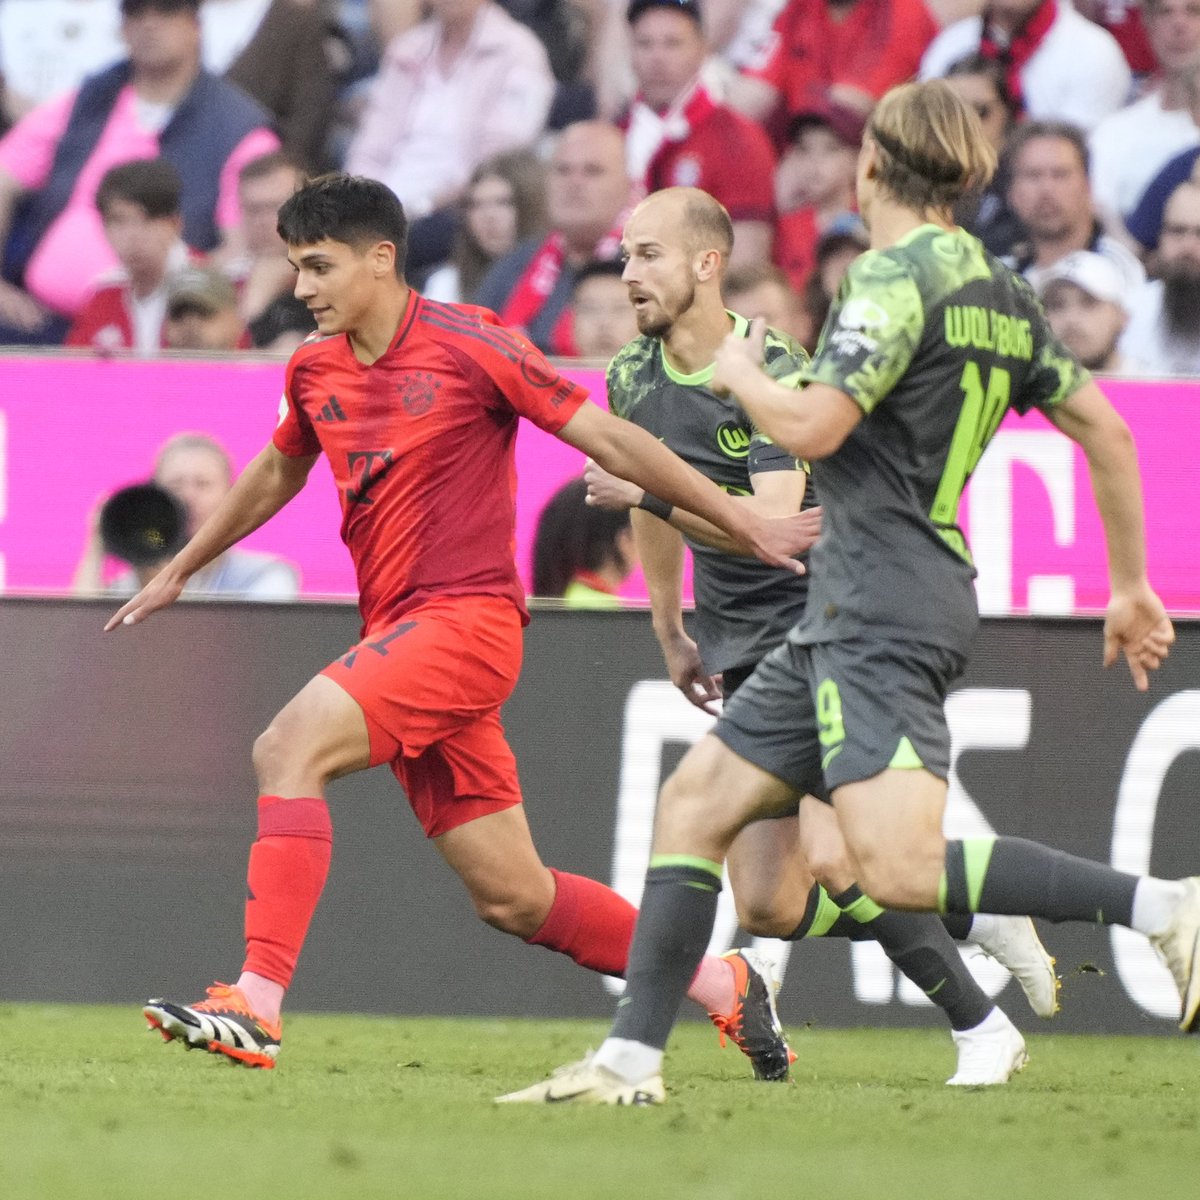 Raíces peruanas sobre el césped del Allianz Arena 🌱🇵🇪

¡Enhorabuena por el debut, Matteo Perez-Vinlöf! 😍

#FCBayern #MiaSanMia